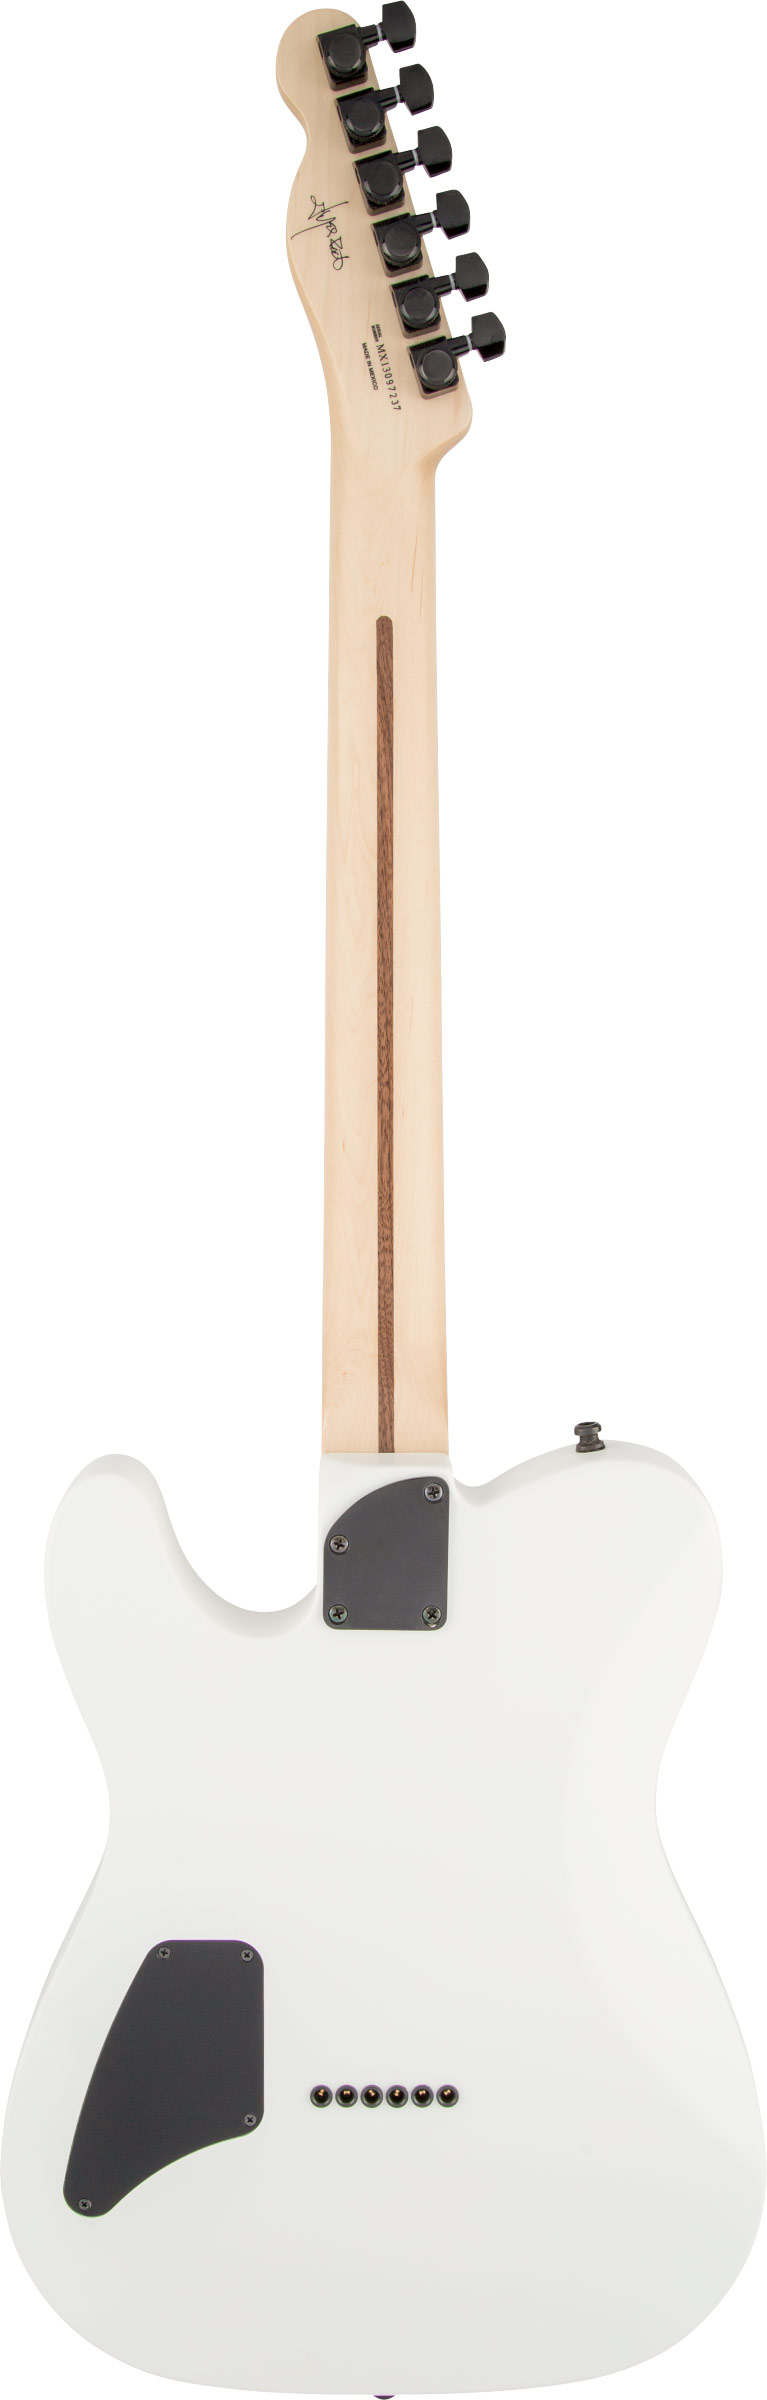 包装無料/送料無料 Fender Mexico Fender jim Telecaster root White ...